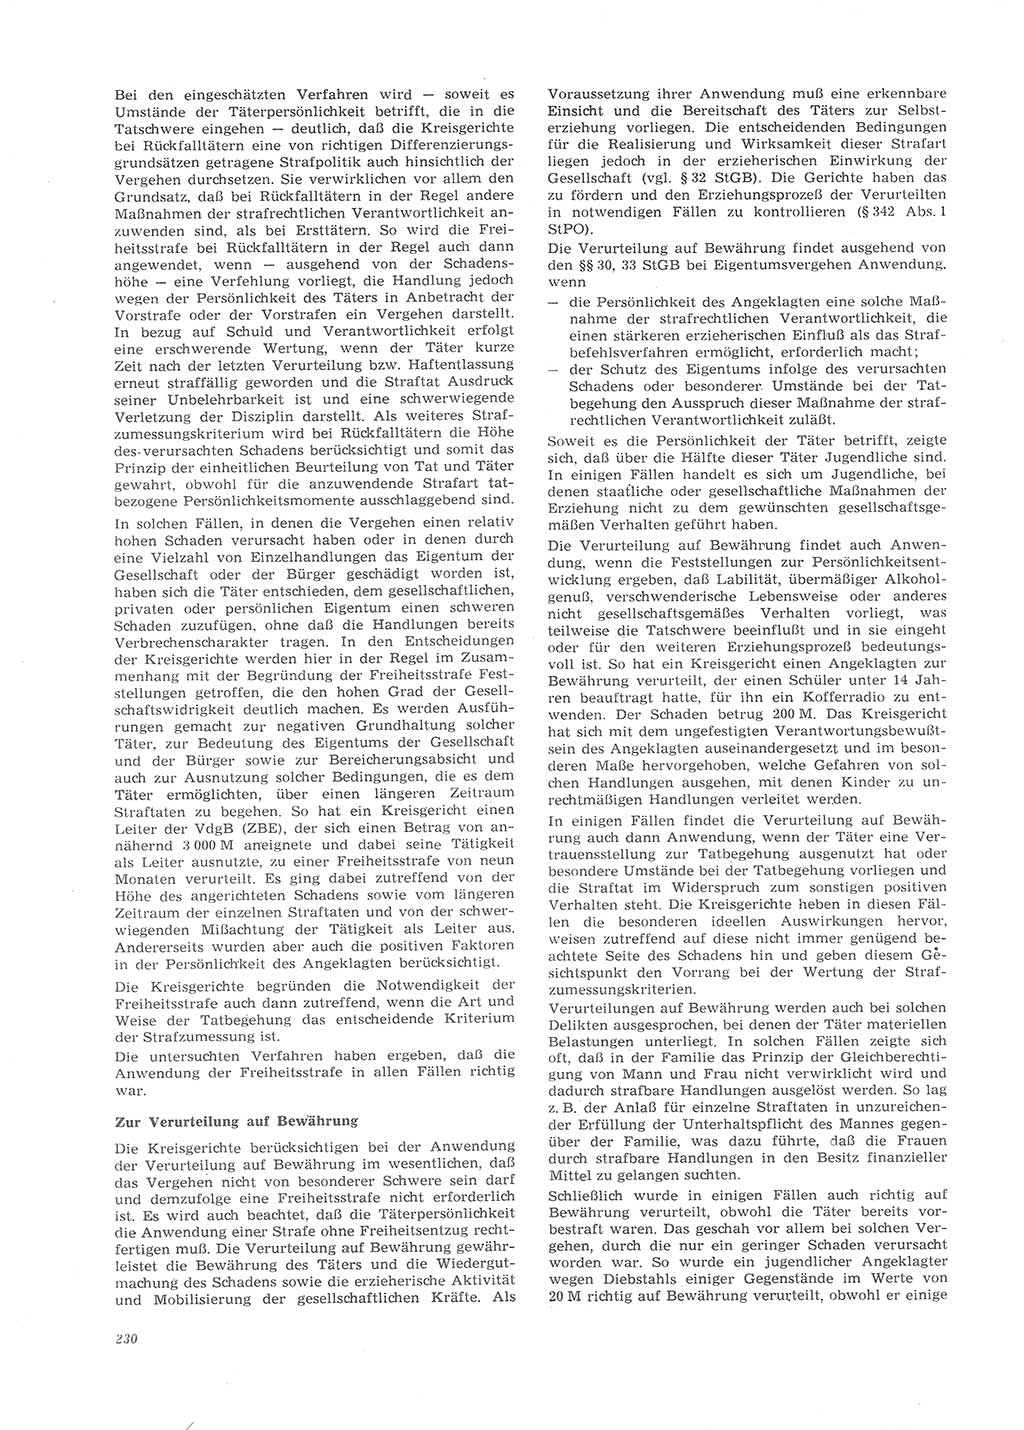 Neue Justiz (NJ), Zeitschrift für Recht und Rechtswissenschaft [Deutsche Demokratische Republik (DDR)], 26. Jahrgang 1972, Seite 230 (NJ DDR 1972, S. 230)